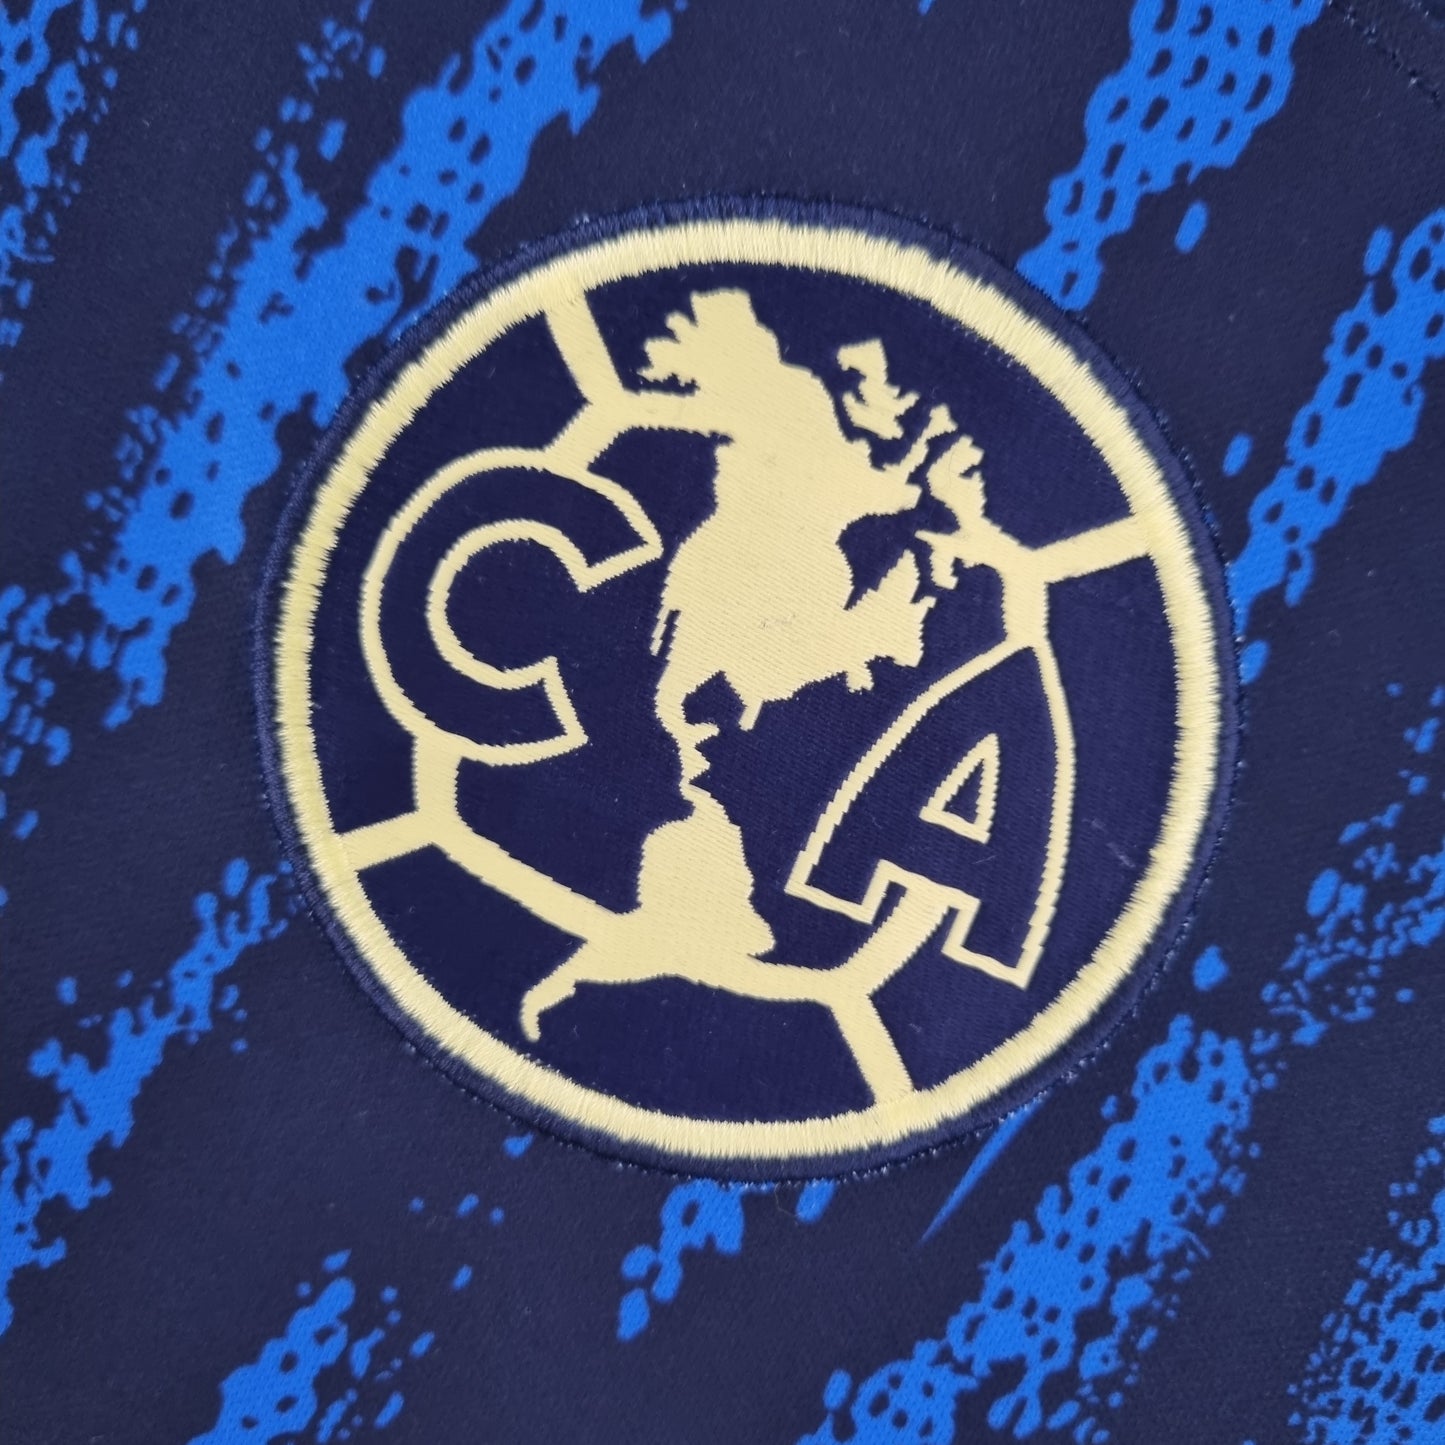 Club America 22/23 Away Kit - Fan version - Logo